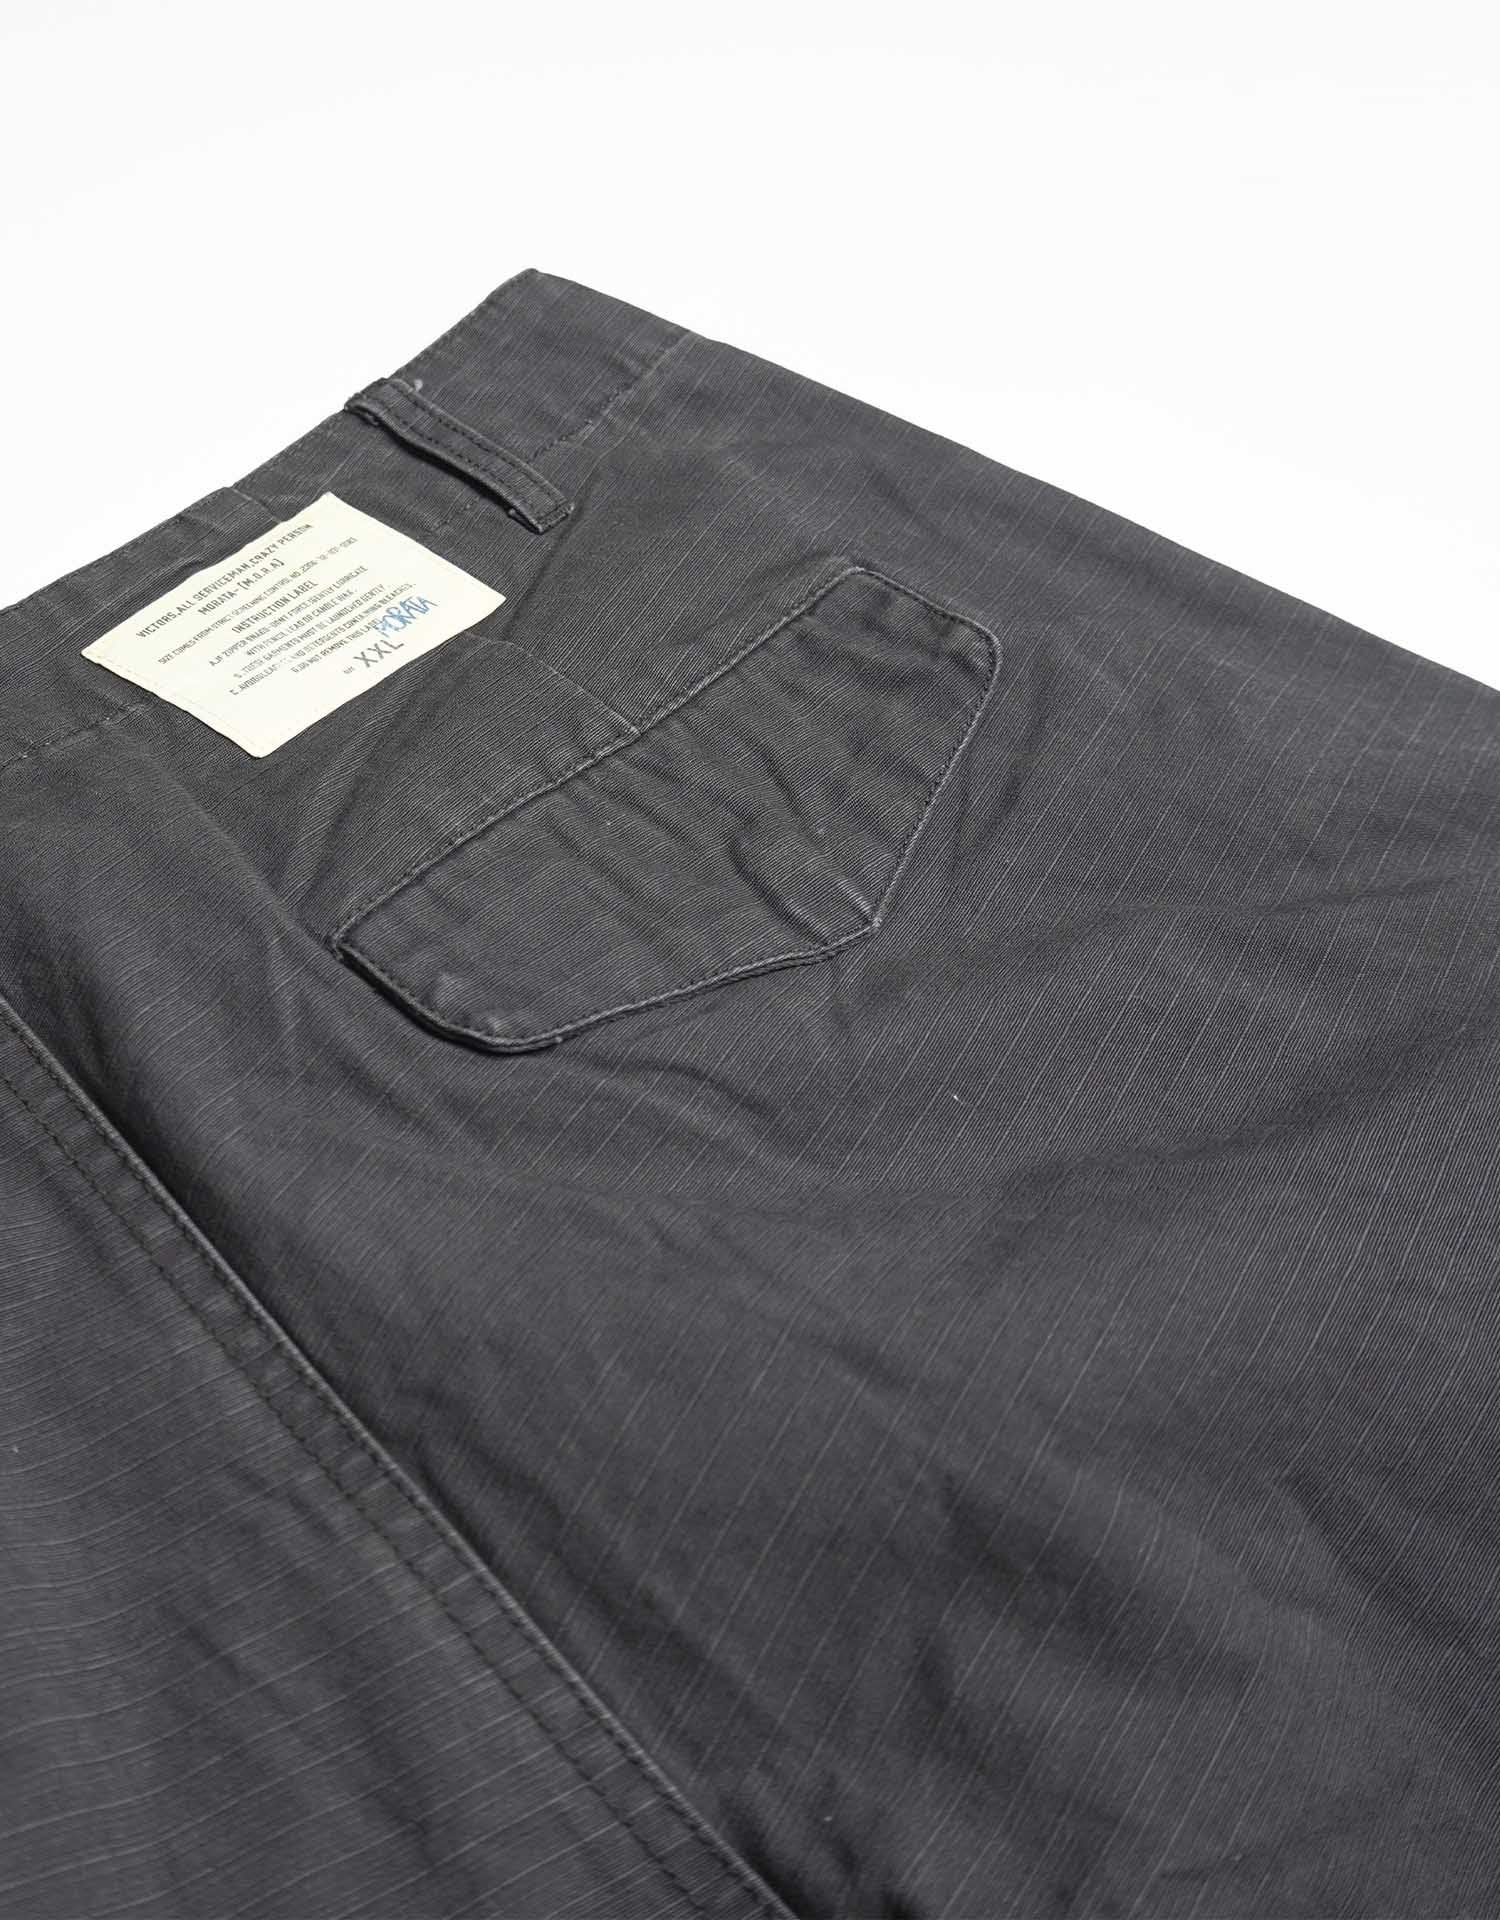 TopBasics 3D Pockets Cargo Shorts